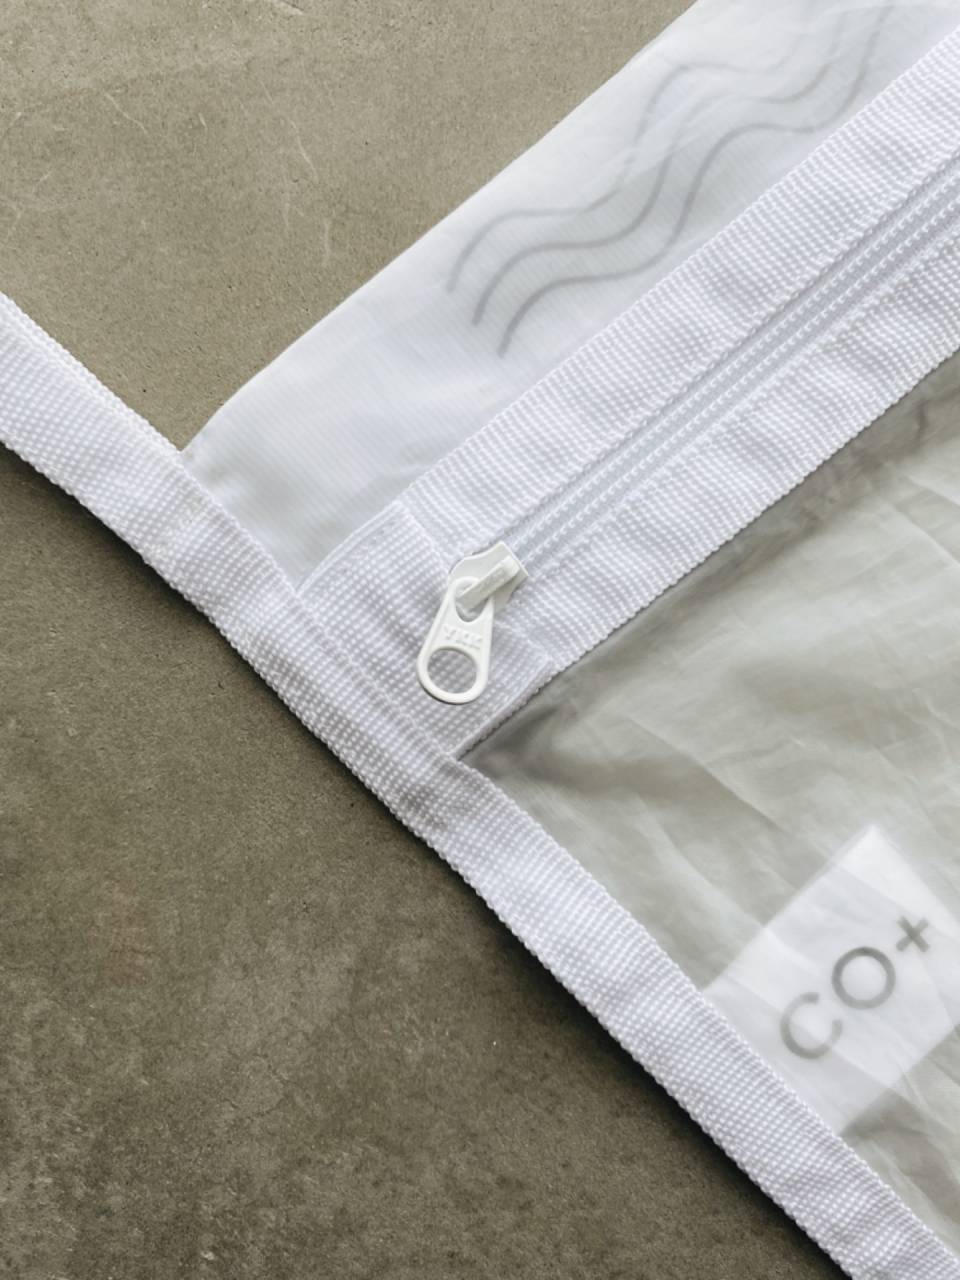 【商品紹介】CO+ WASHING BAG (マイクロプラスチックの流出を防ぐ洗濯ネット)